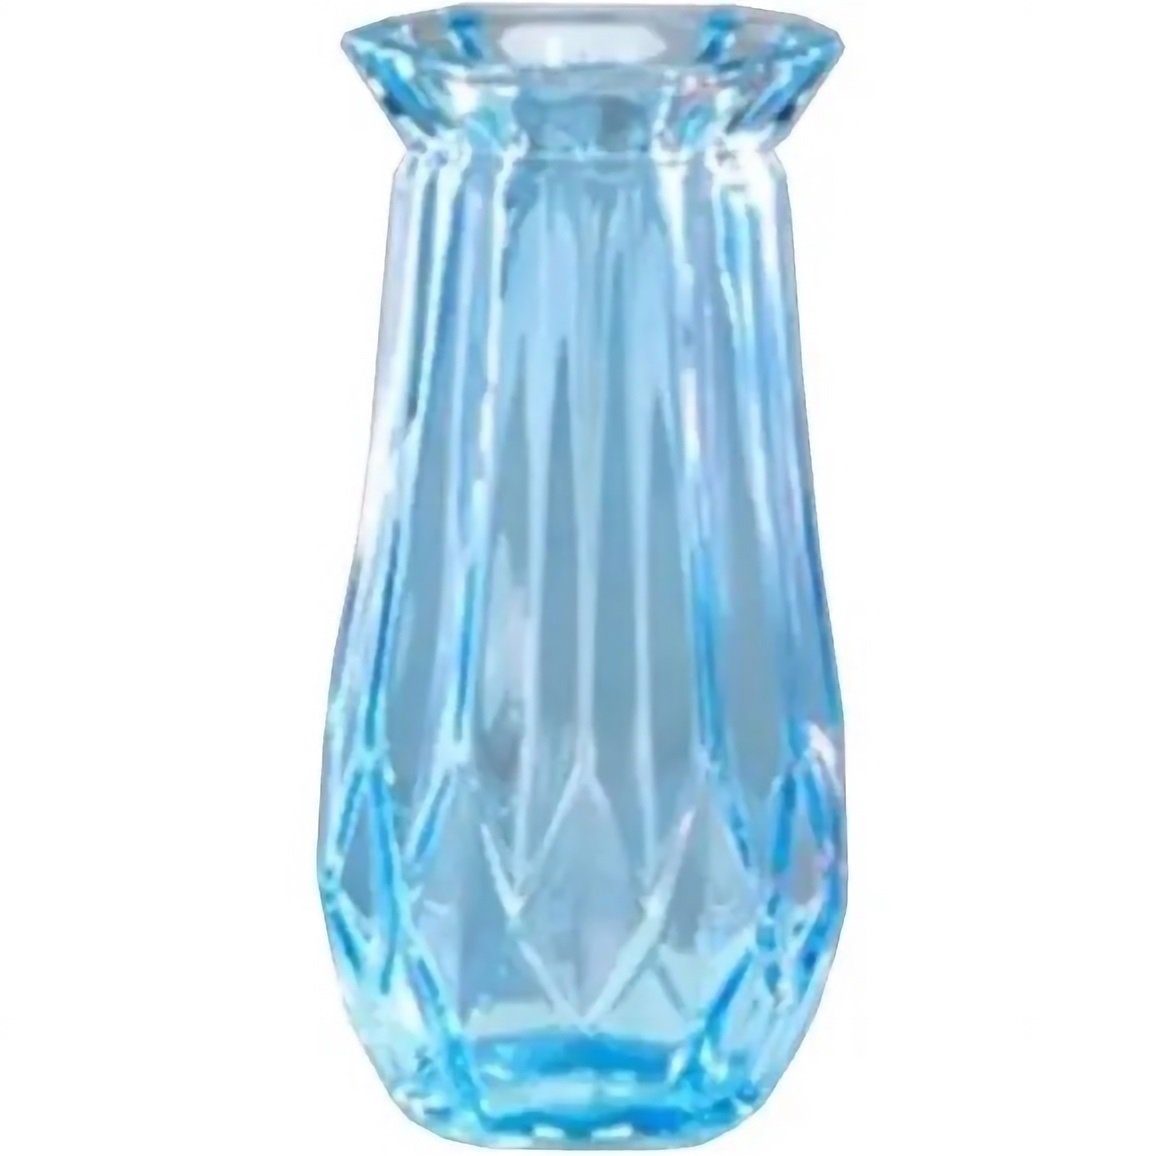 Photos - Vase VIVA Ваза  Ombre, 15 см, синя  (6841728)